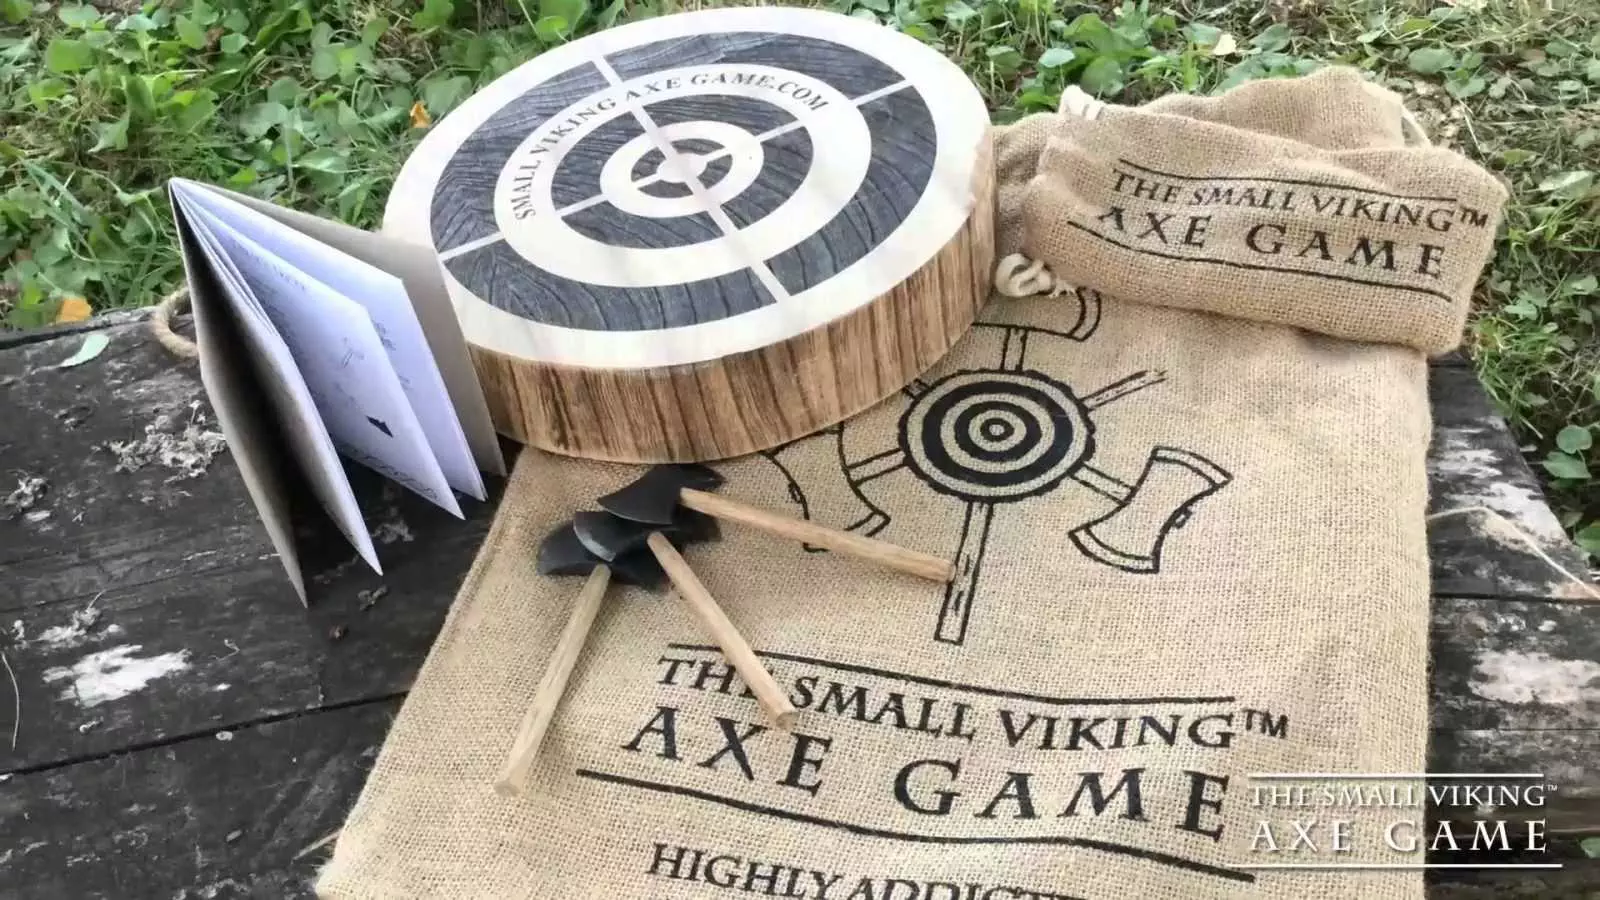 Viking Axe Game